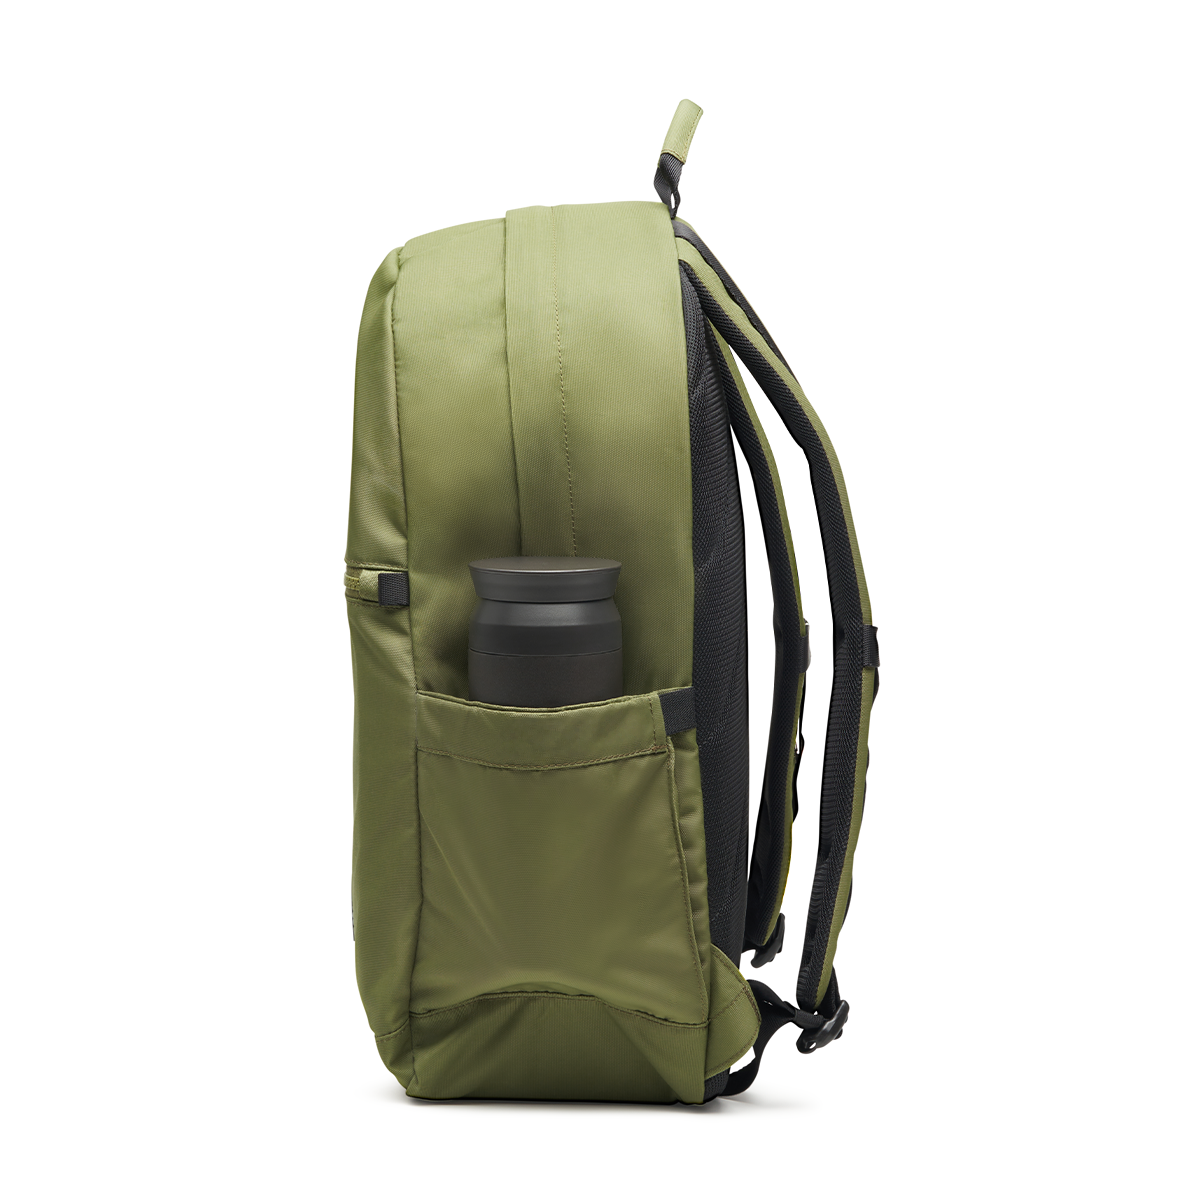 JJ Backpack - Military Green